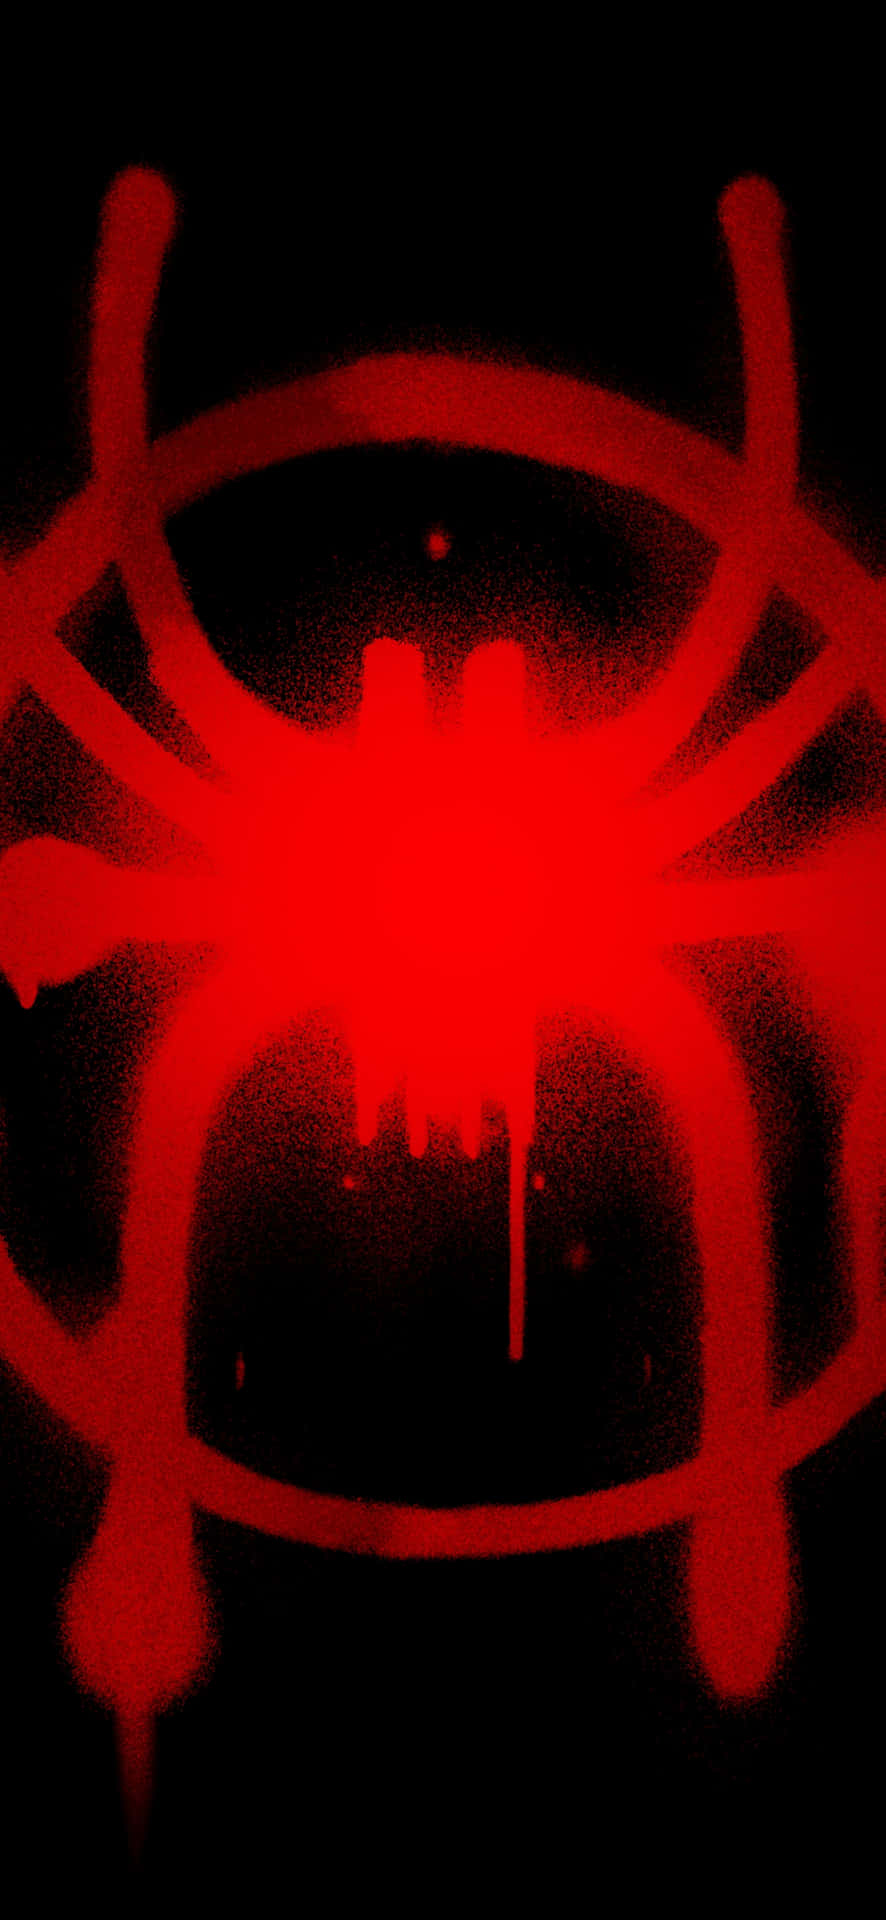 Red Biohazard Symbol Dark Background Wallpaper